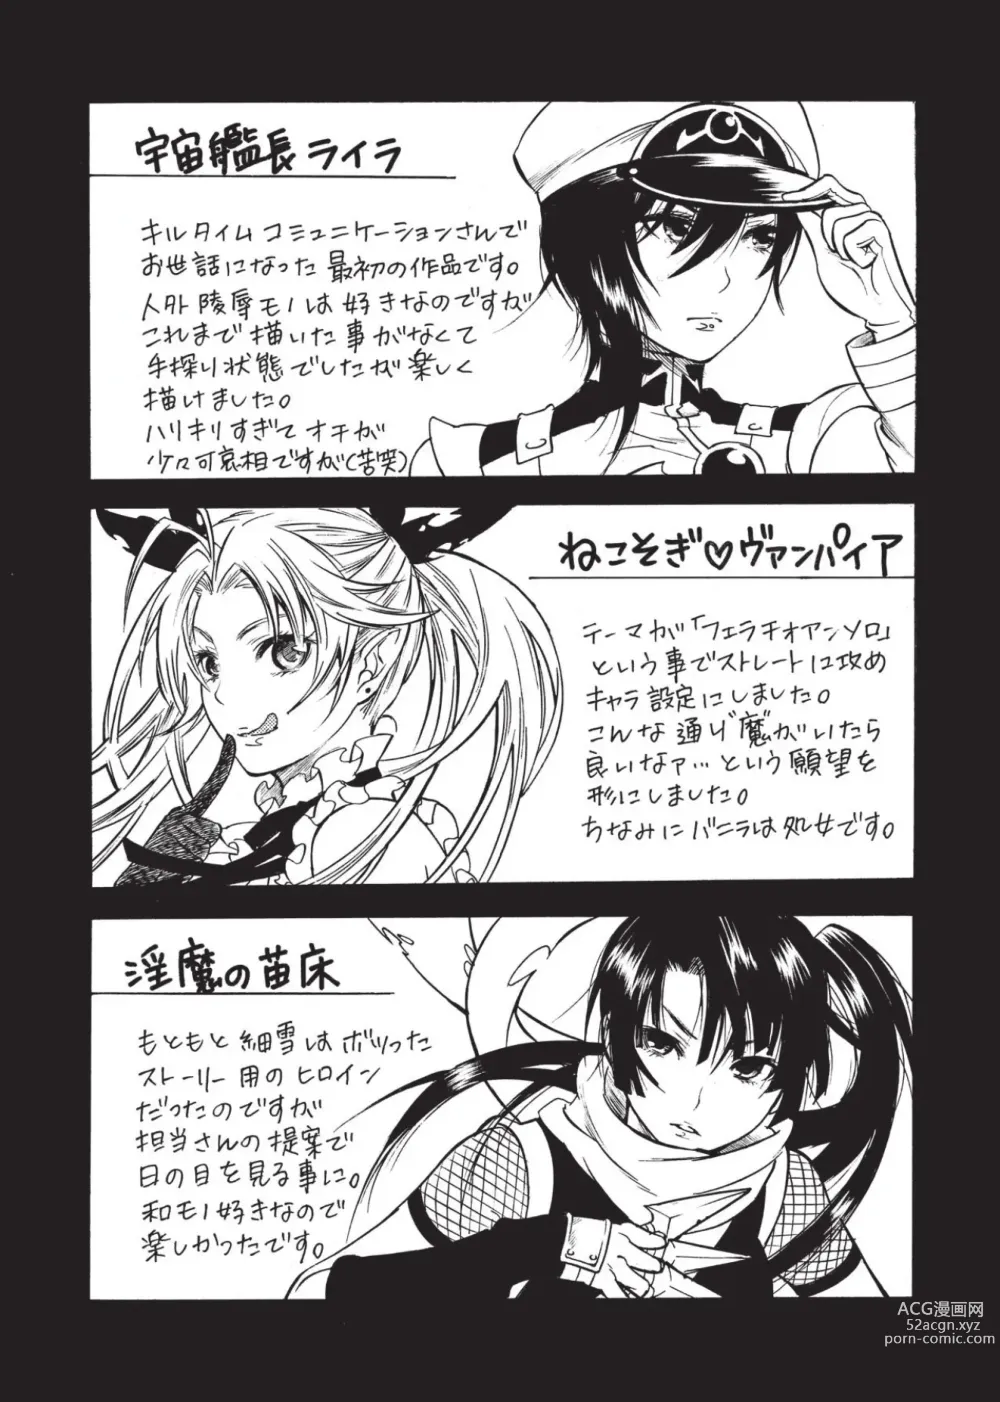 Page 156 of manga Aigan Masochist